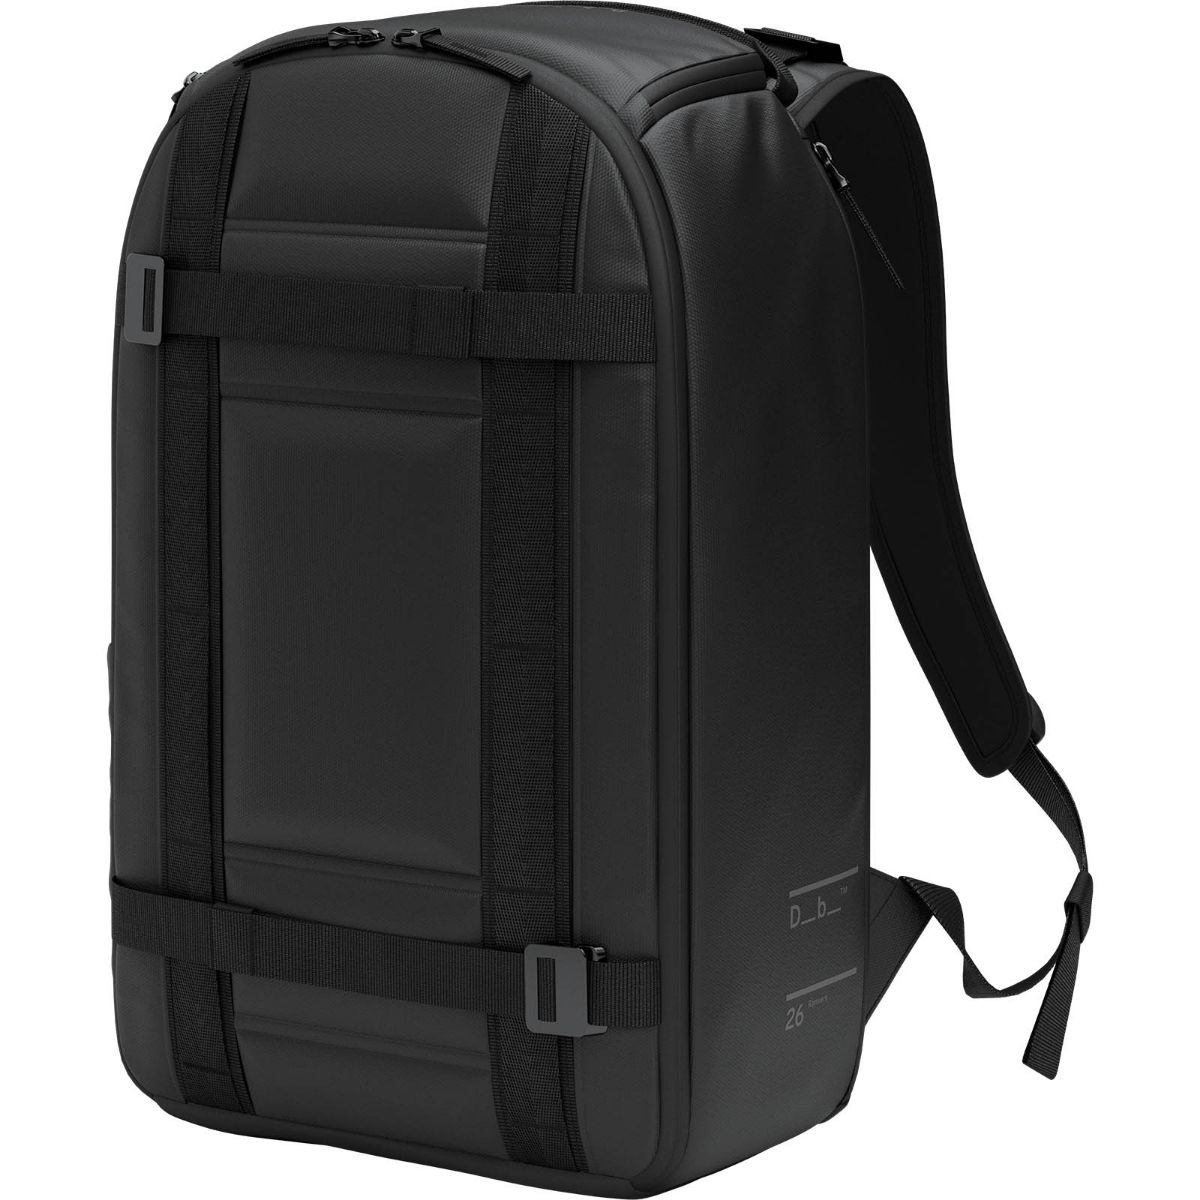 Db Ramverk Backpack 26L Black Out. Sekk fra Db med eget rom til laptop, drikkeflaskeholder og smarte lommer